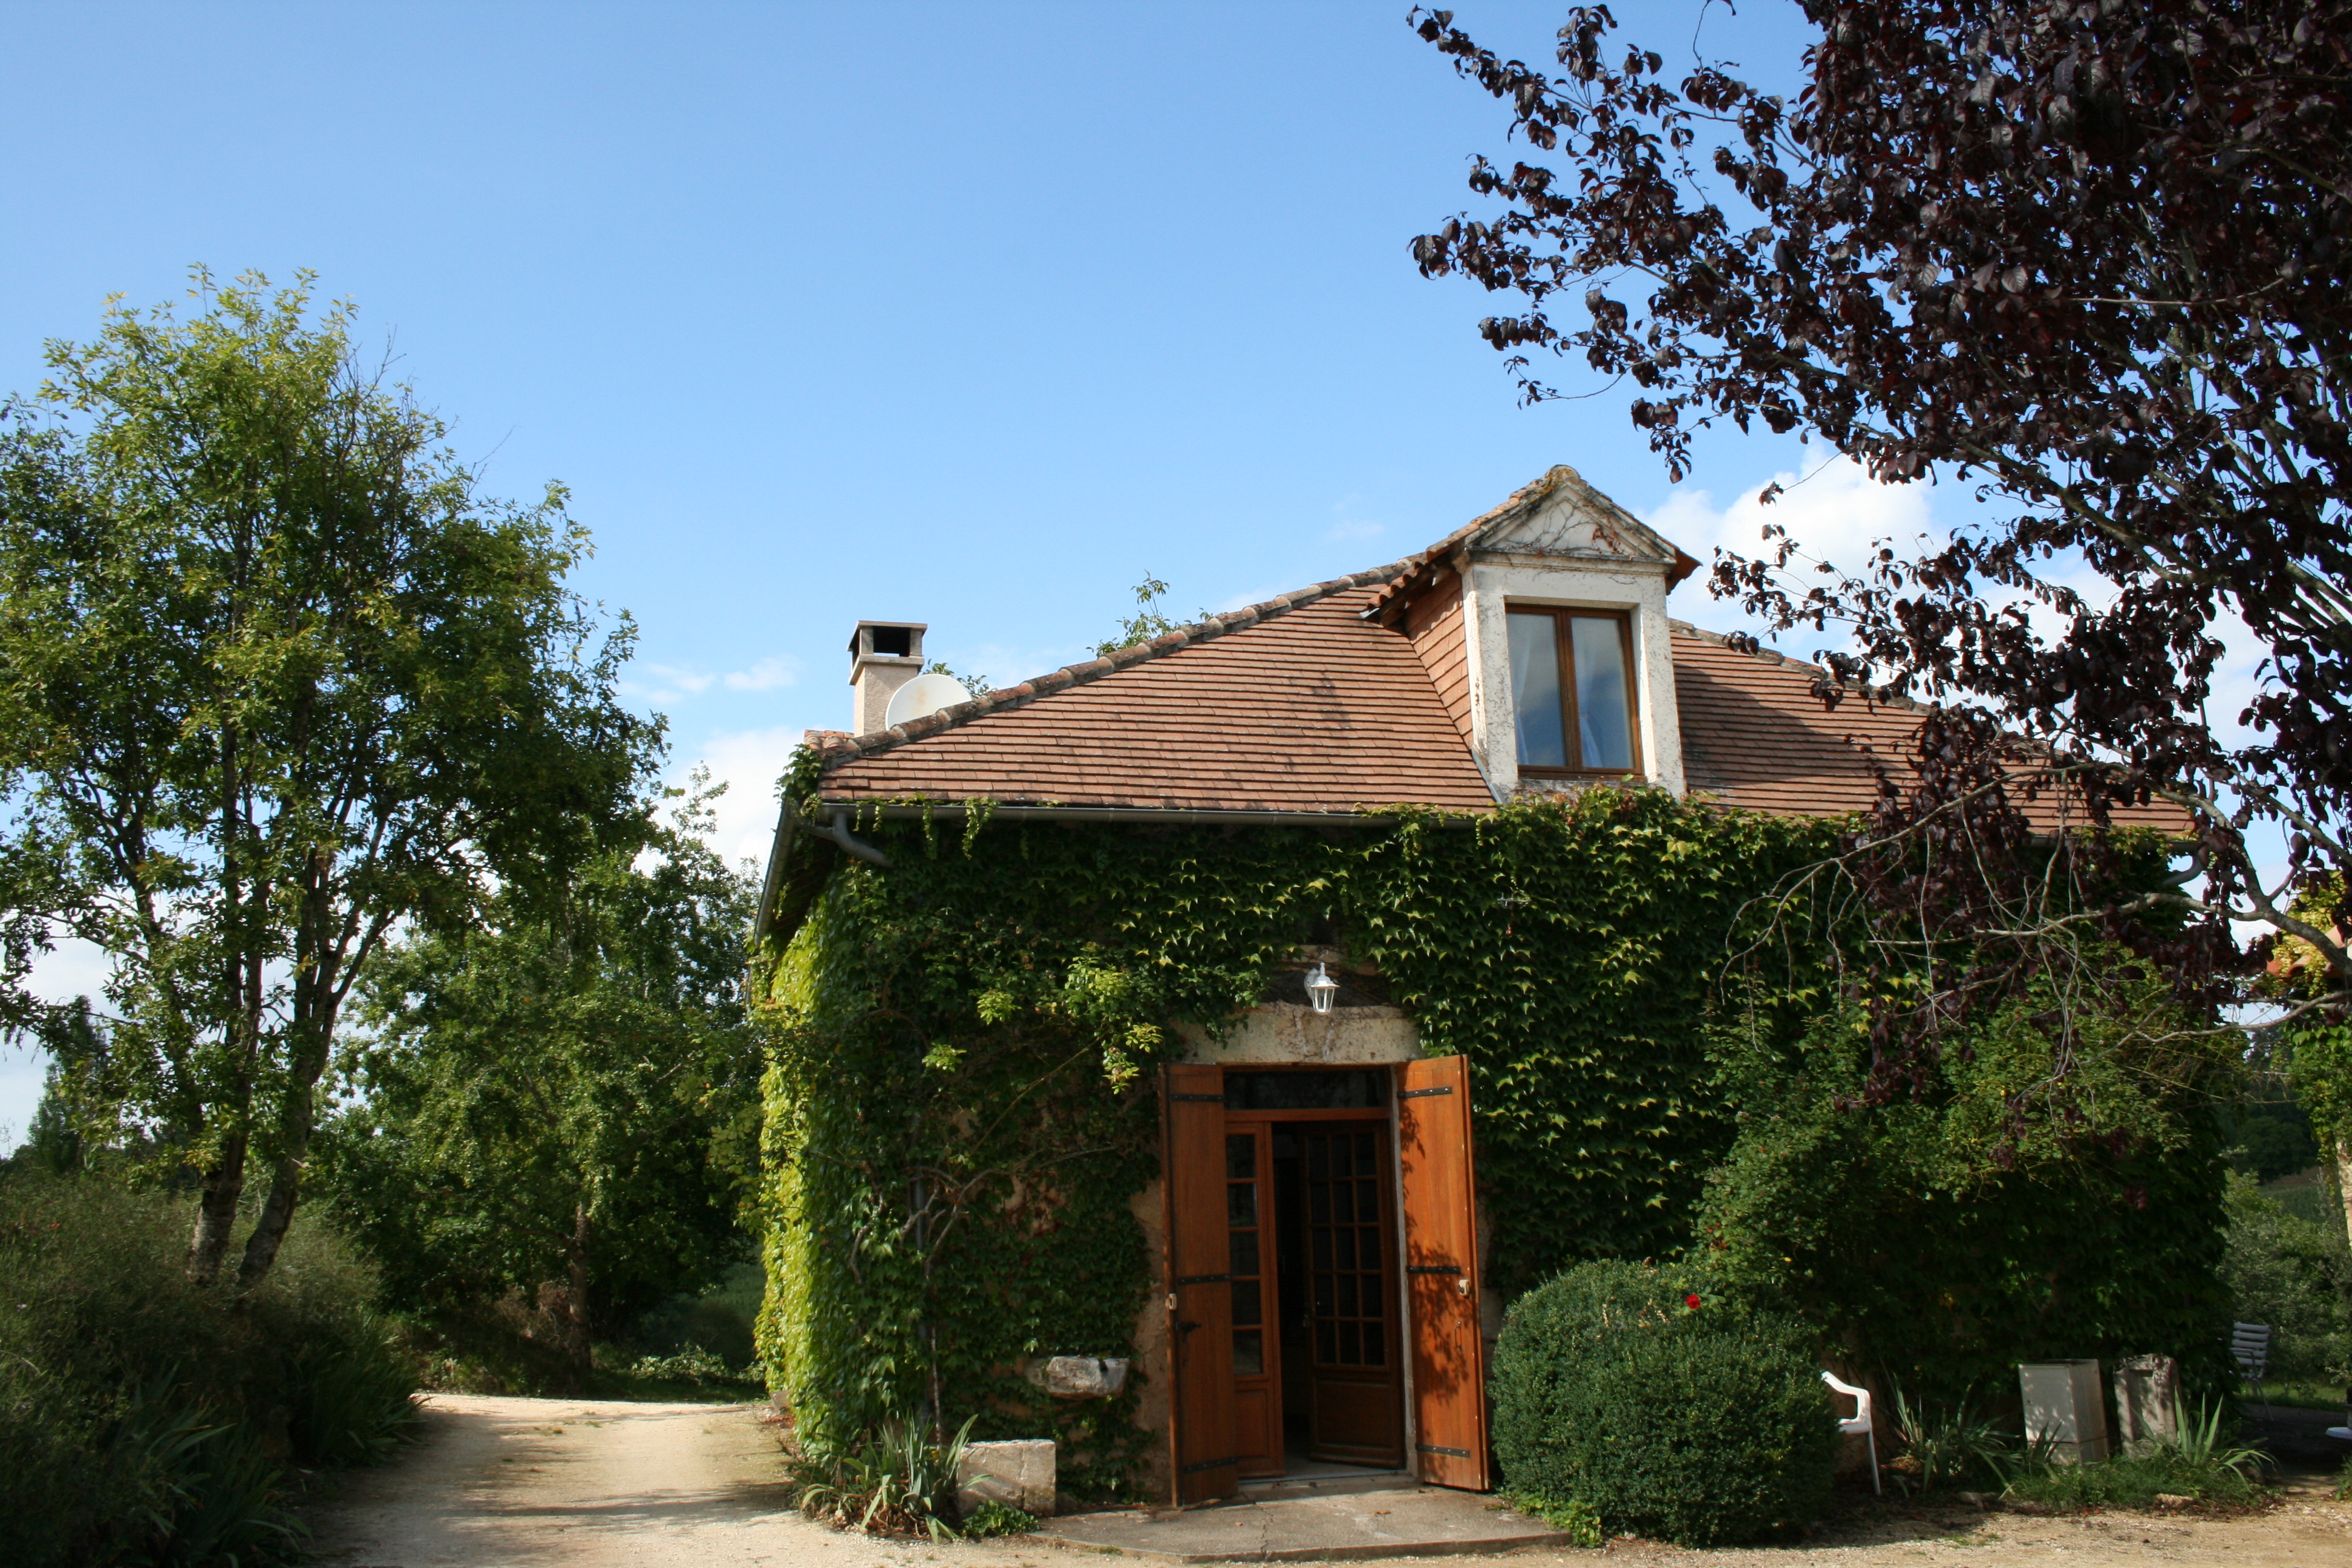 Notre charmant gite en pierre offre le refuge idéal pour vos prochaines vacances en Dordogne